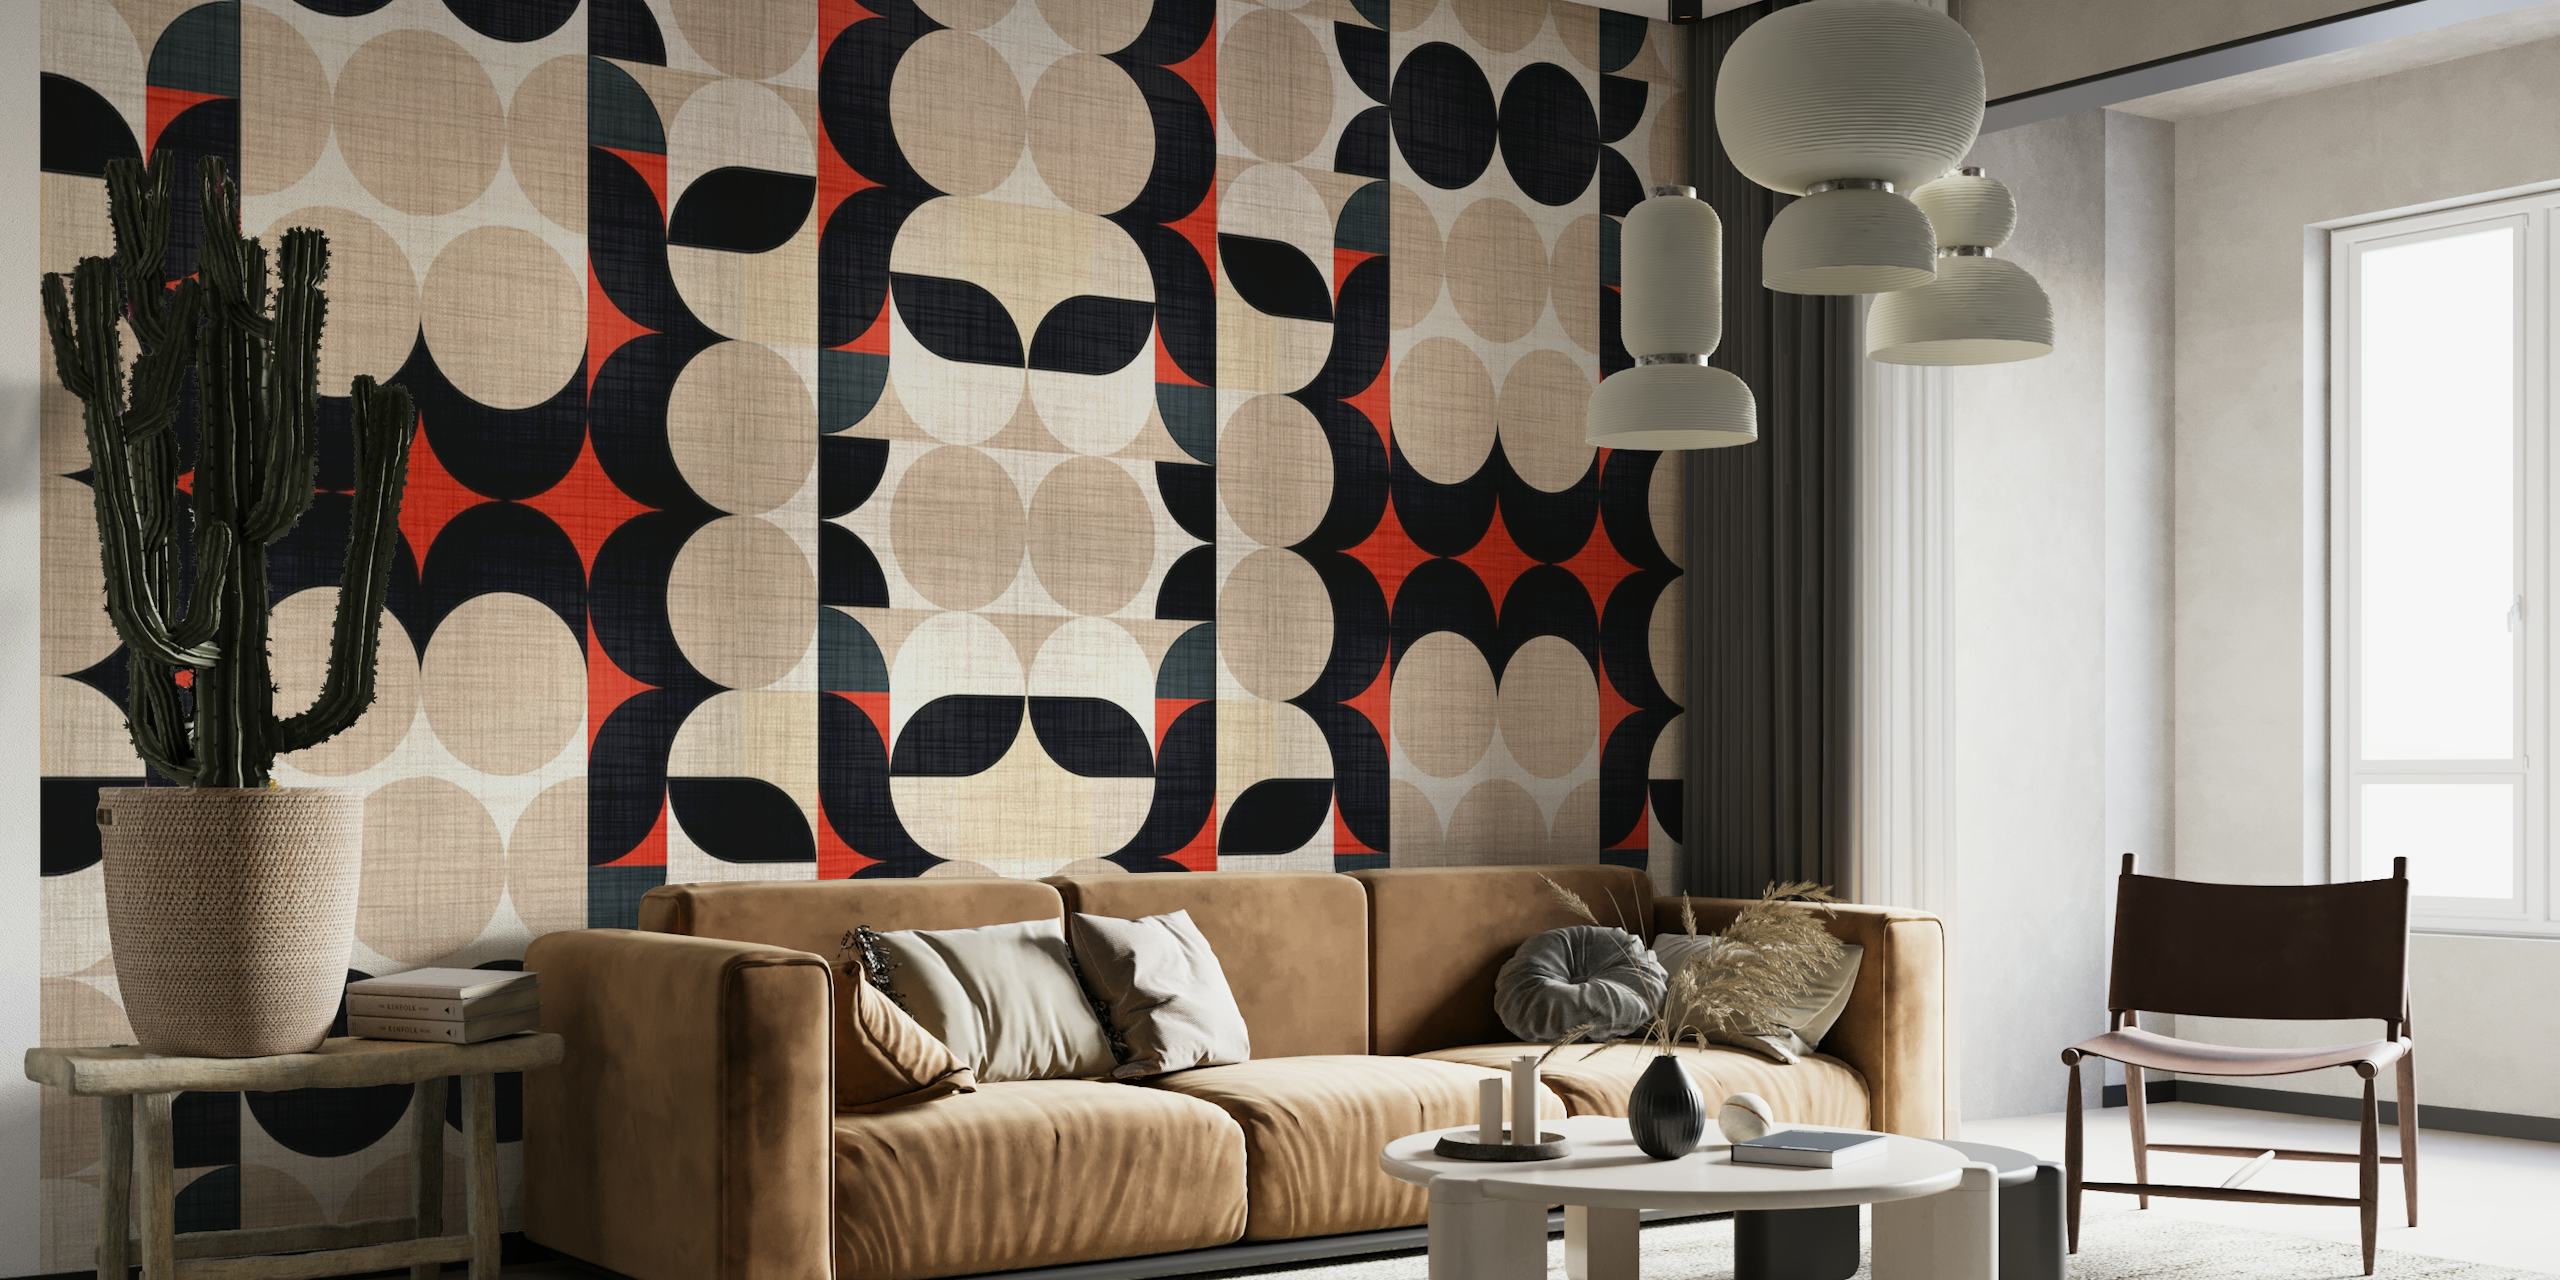 Moderne stoffen patroonmuurschildering uit het midden van de eeuw met geometrische vormen in beige, zwart en rood